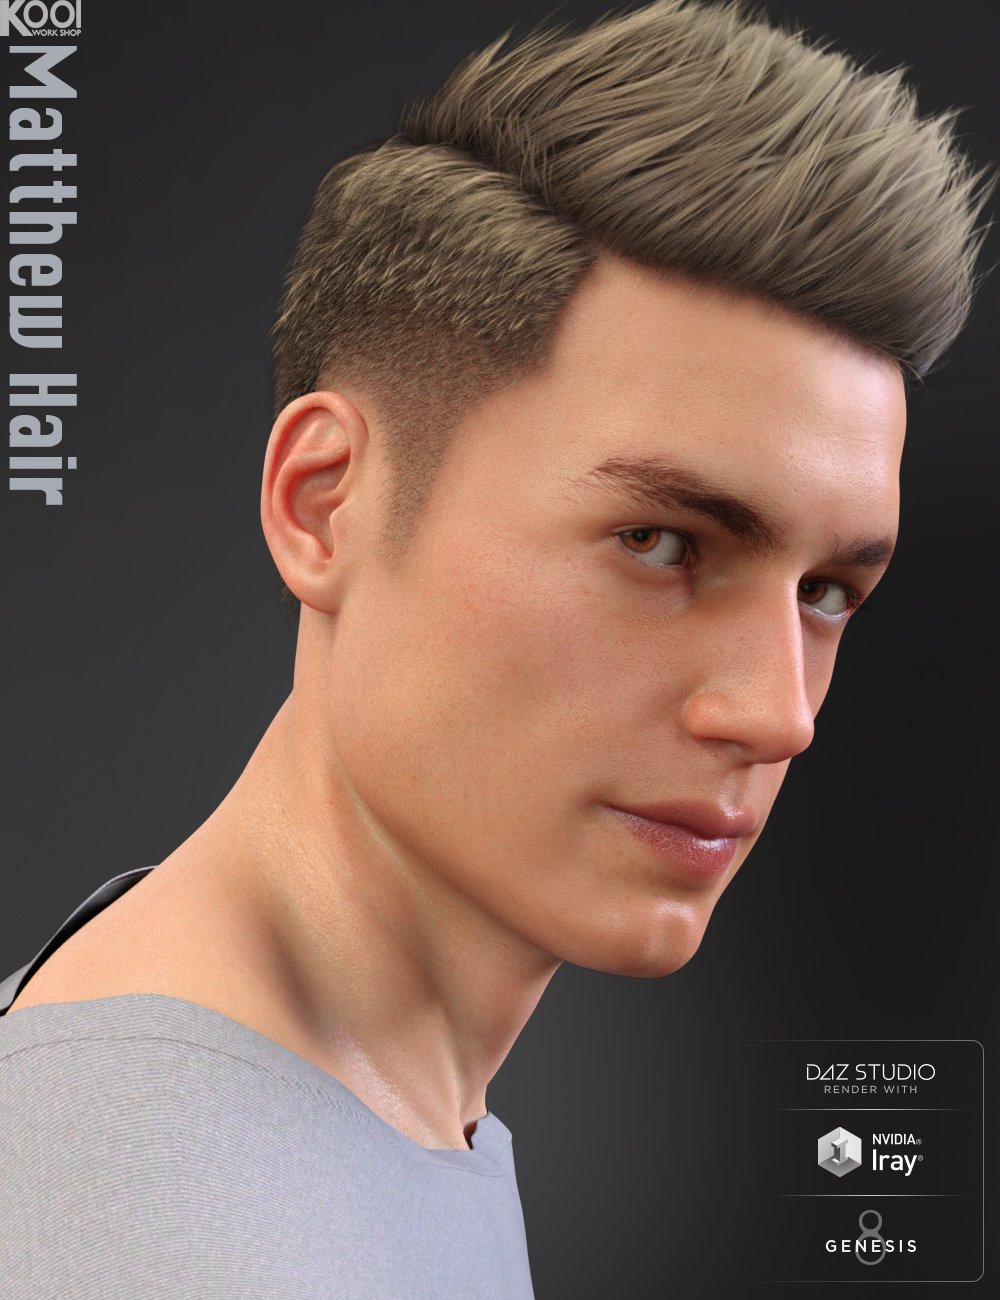 Matthew Hair for Genesis 8 Male by: Kool, 3D Models by Daz 3D